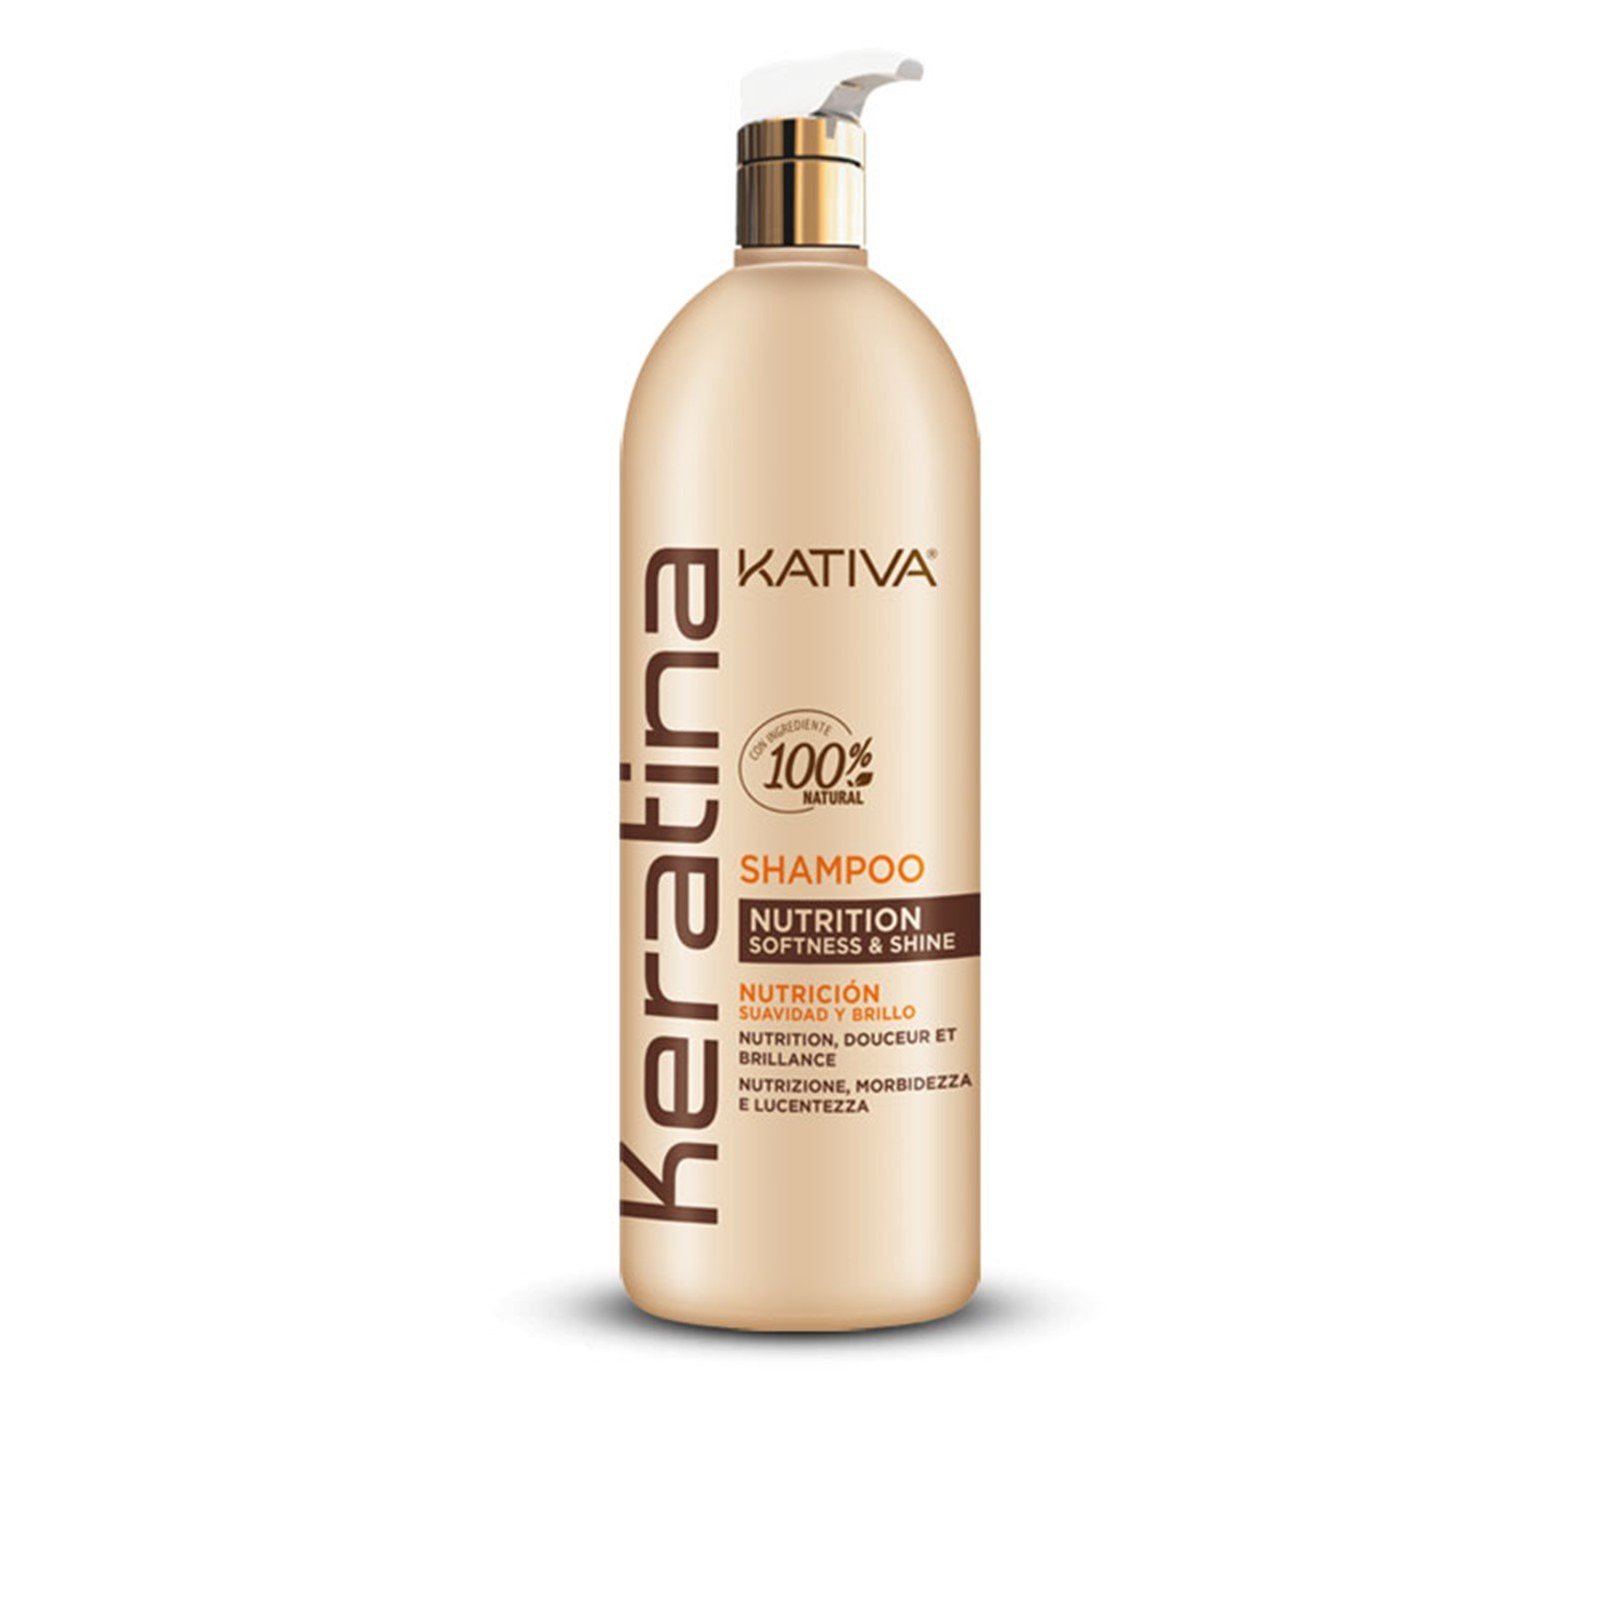 Kativa Keratin Nutrition Softness & Shine Shampoo 1L